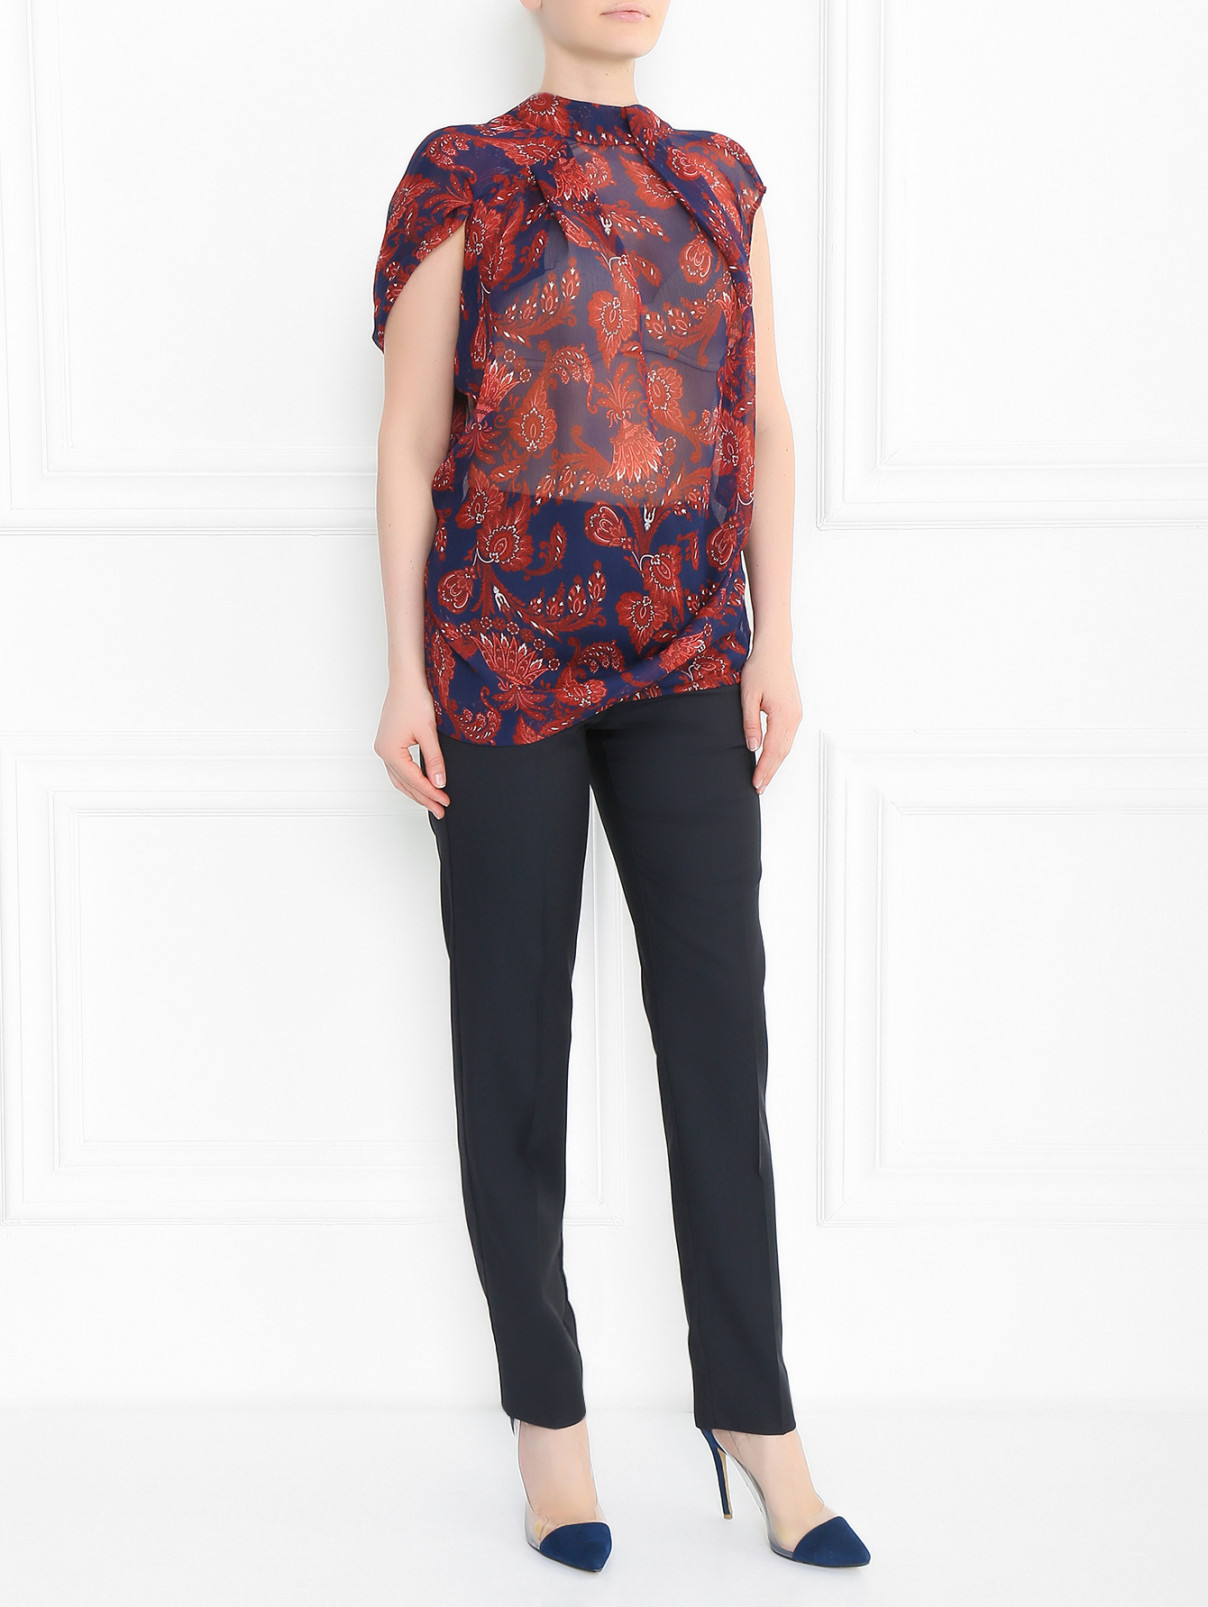 Полупрозрачная блуза из шелка асимметричного кроя с узором "пейсли" Strenesse  –  Модель Общий вид  – Цвет:  Узор